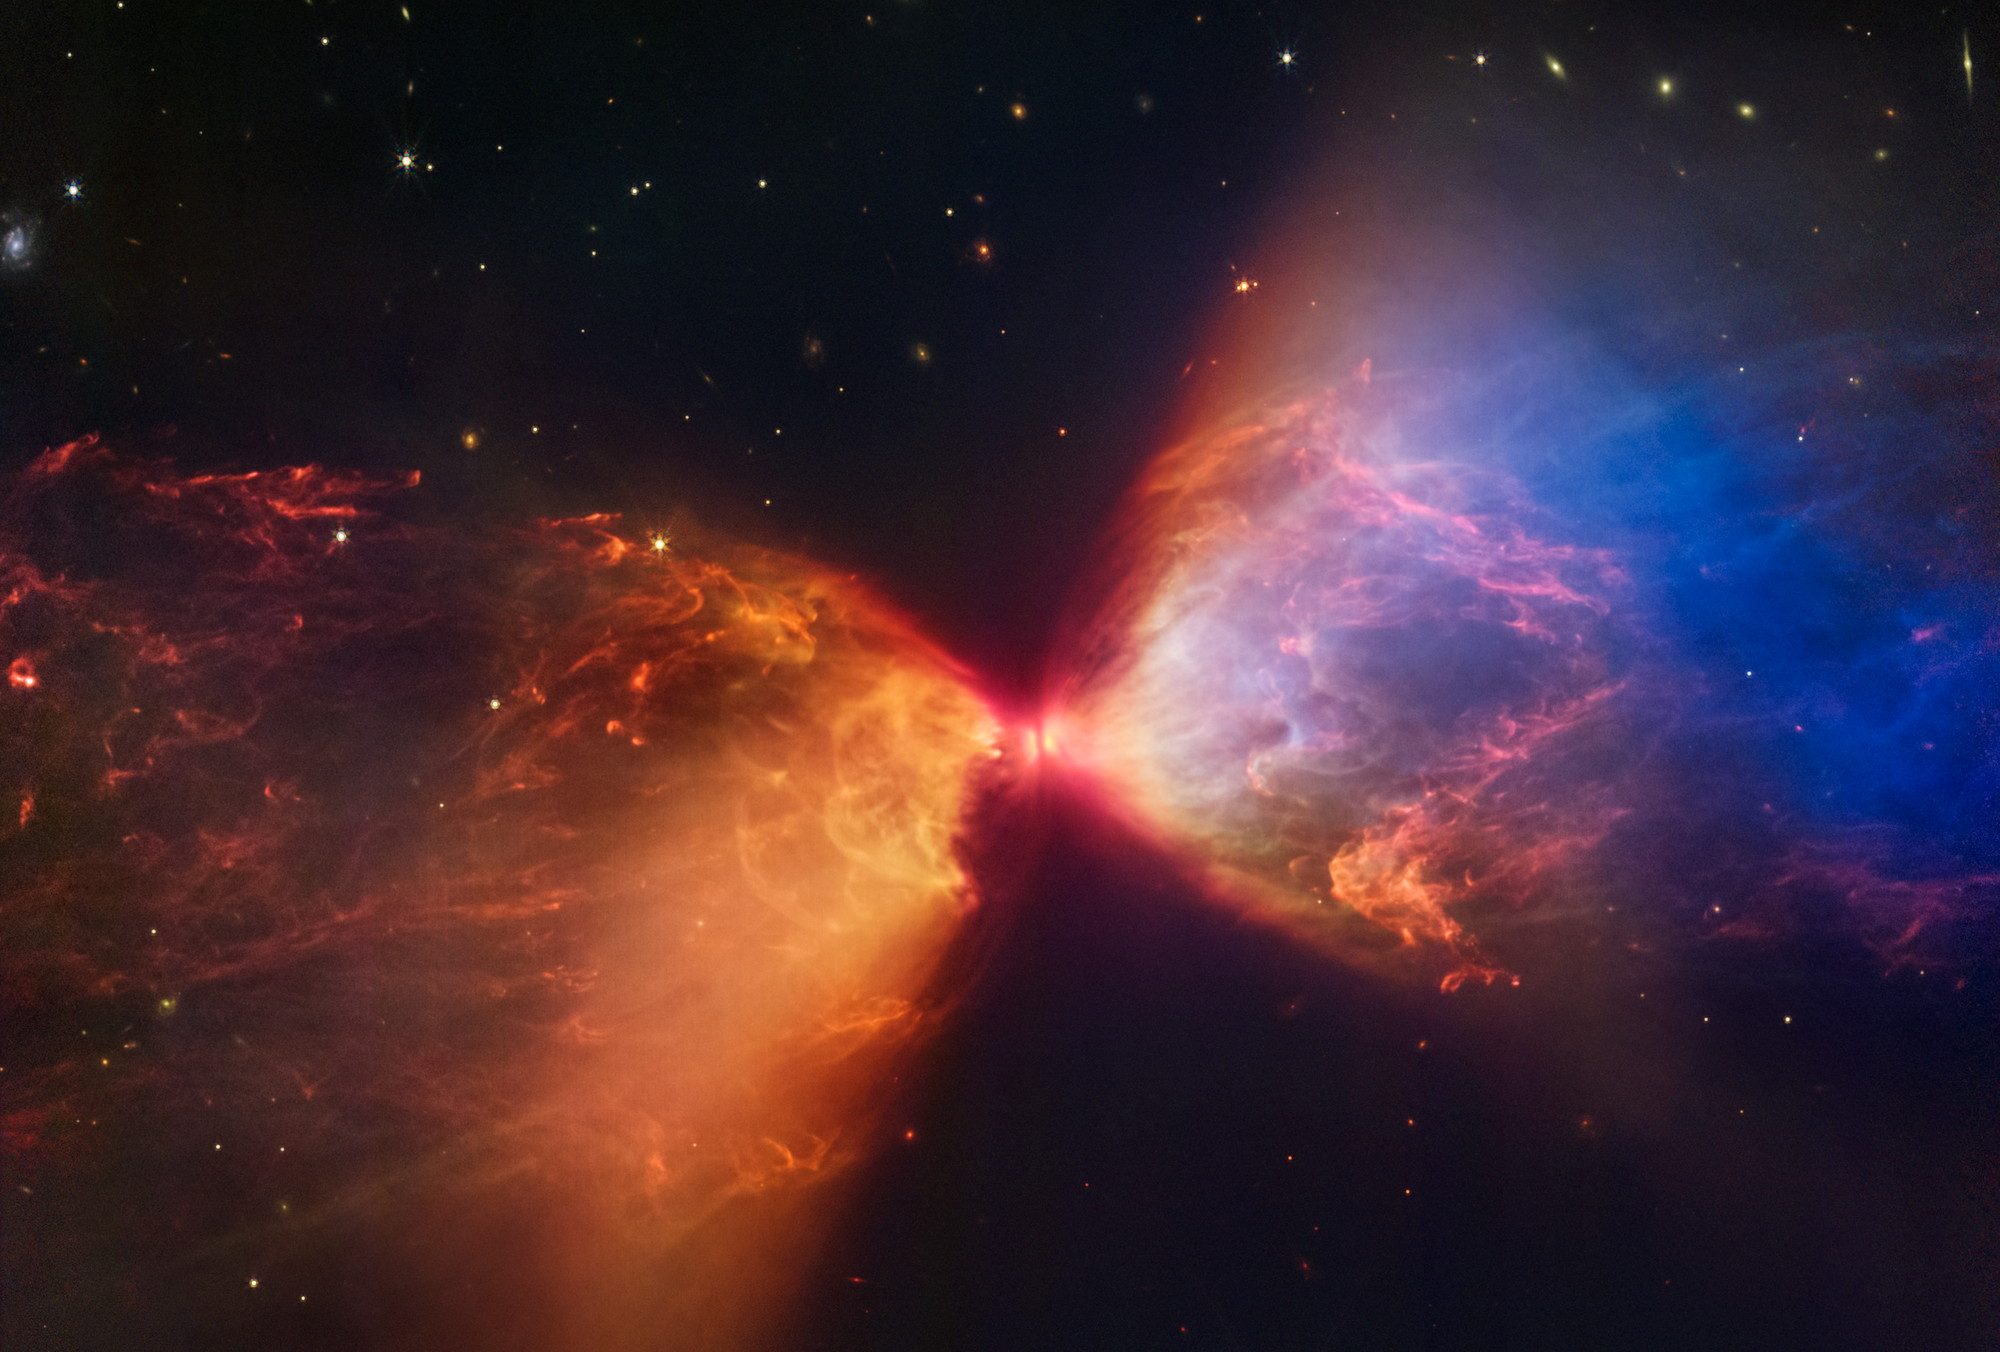 Kozmikus homokórára emlékeztető csillagszületést örökített meg a James Webb űrtávcső